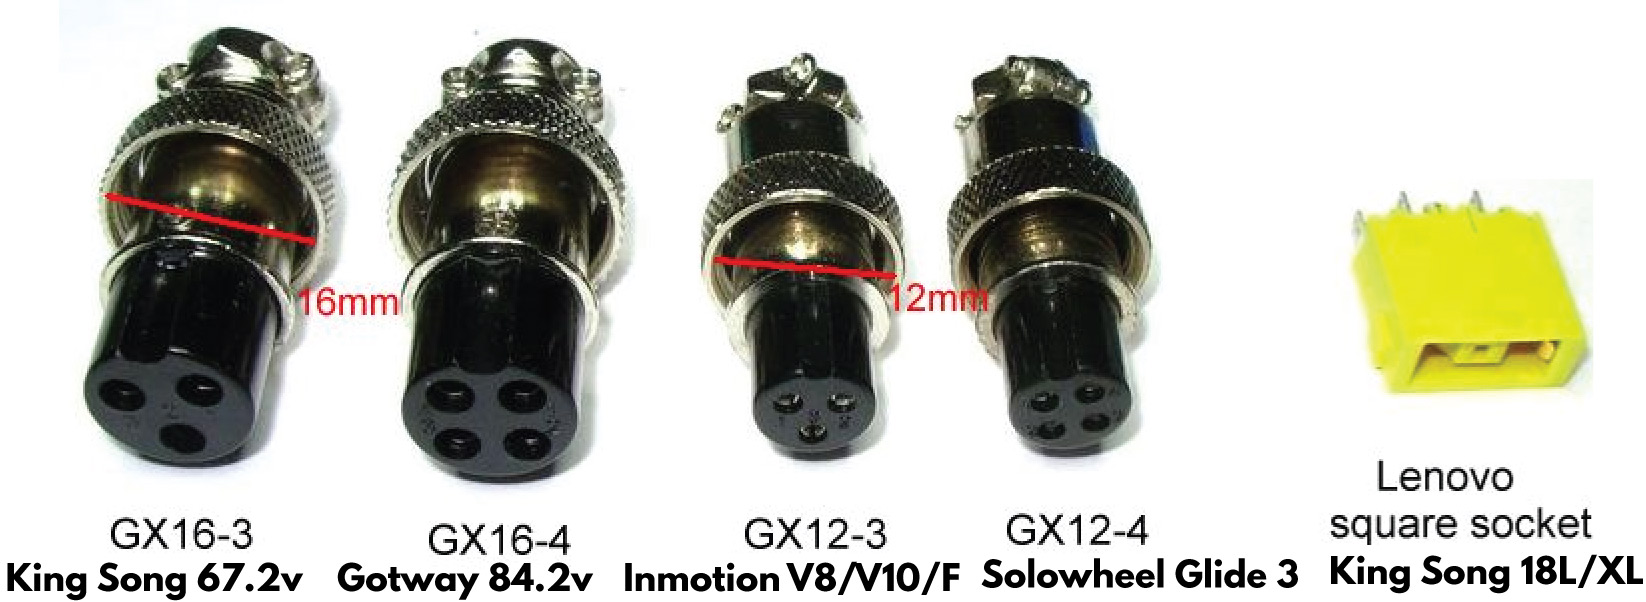 Chargeur 54.6V / 2A (connecteur GX12-3)